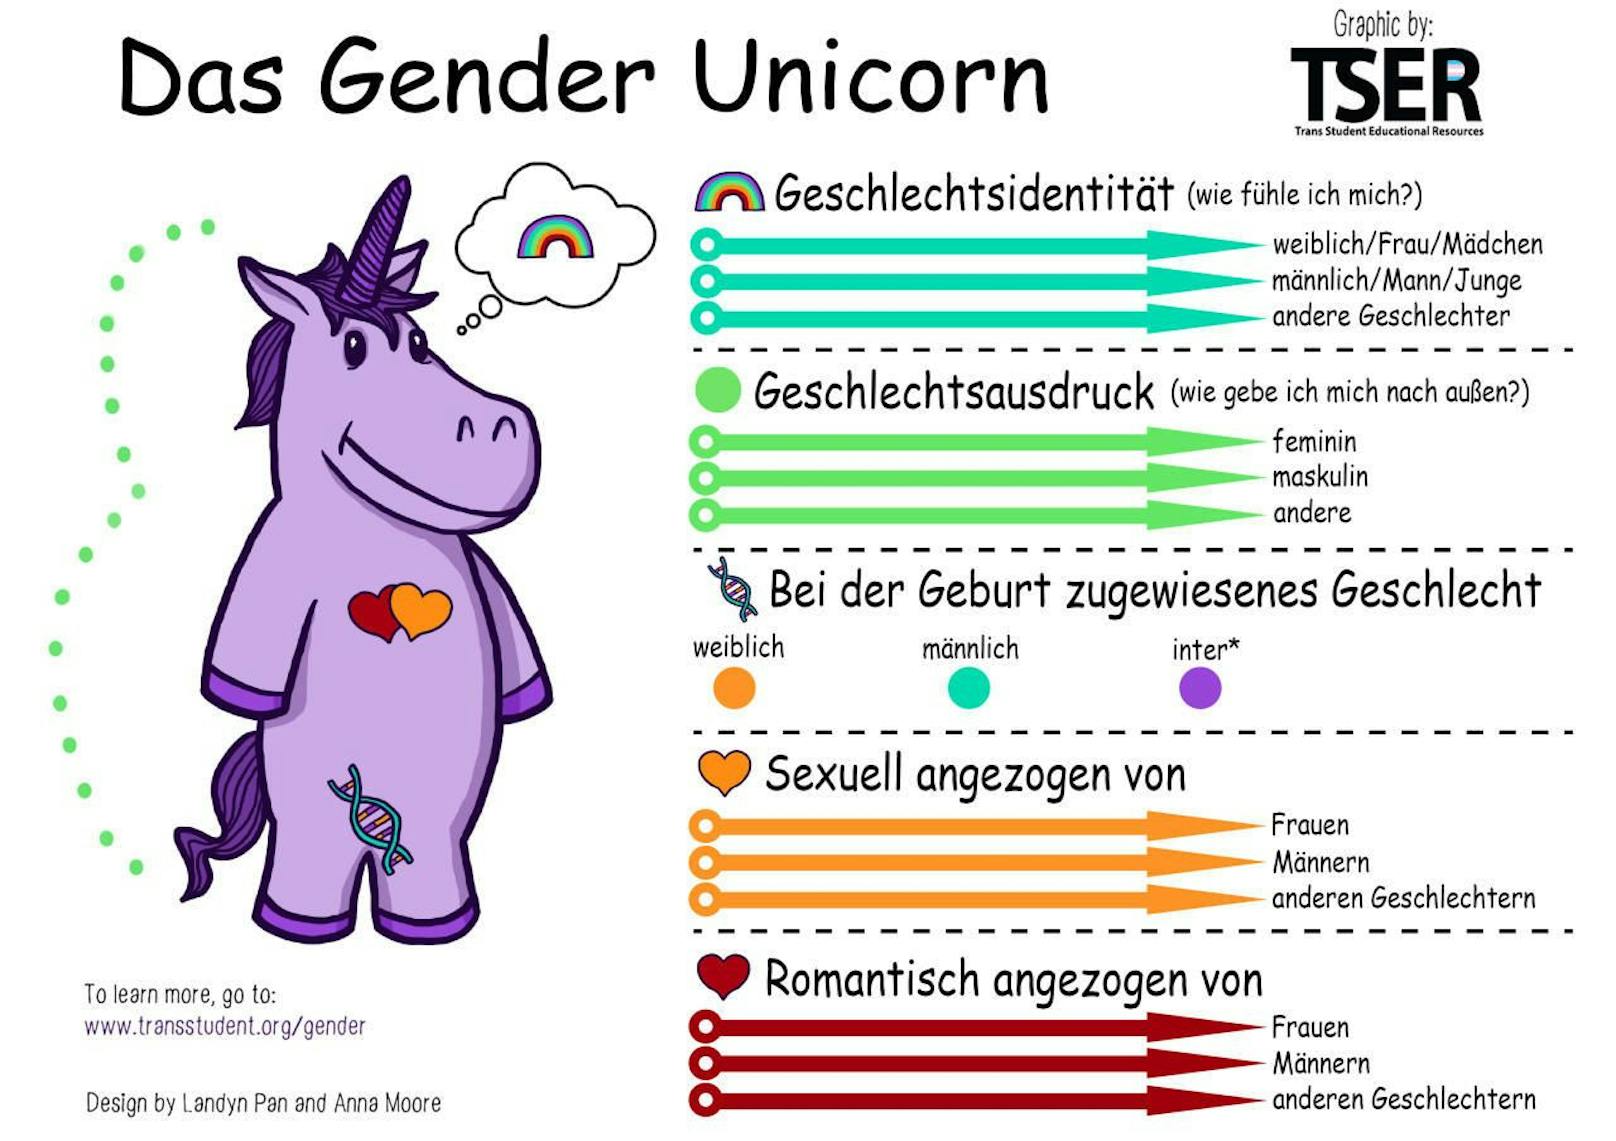 Die deutsche Version des Gender-Unicorns, das in der Schule ausgehängt wurde.